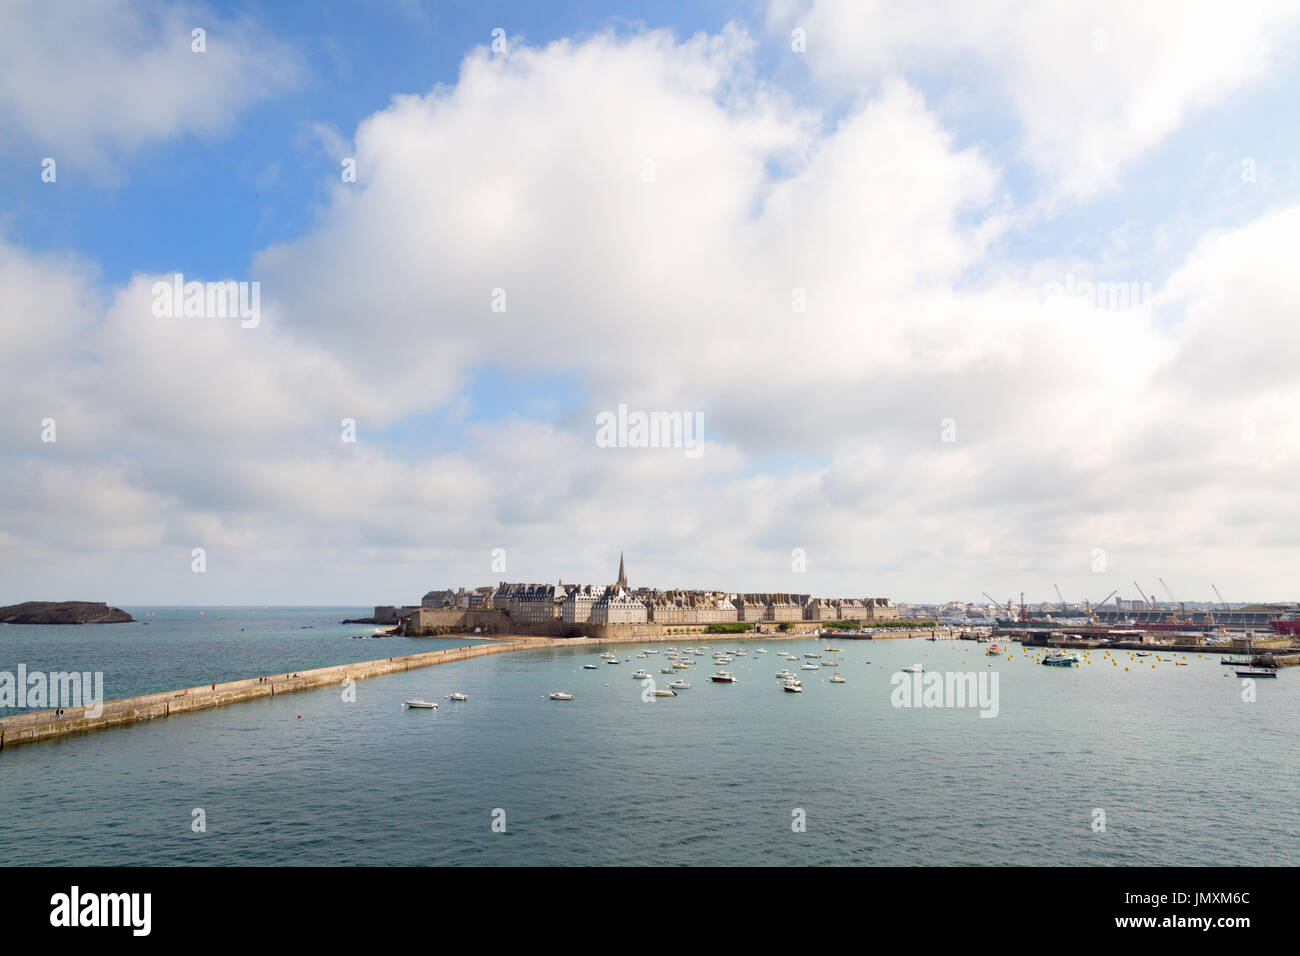 Le port de St Malo Bretagne France - vue depuis le ferry avec ciel bleu et nuages, en été Banque D'Images